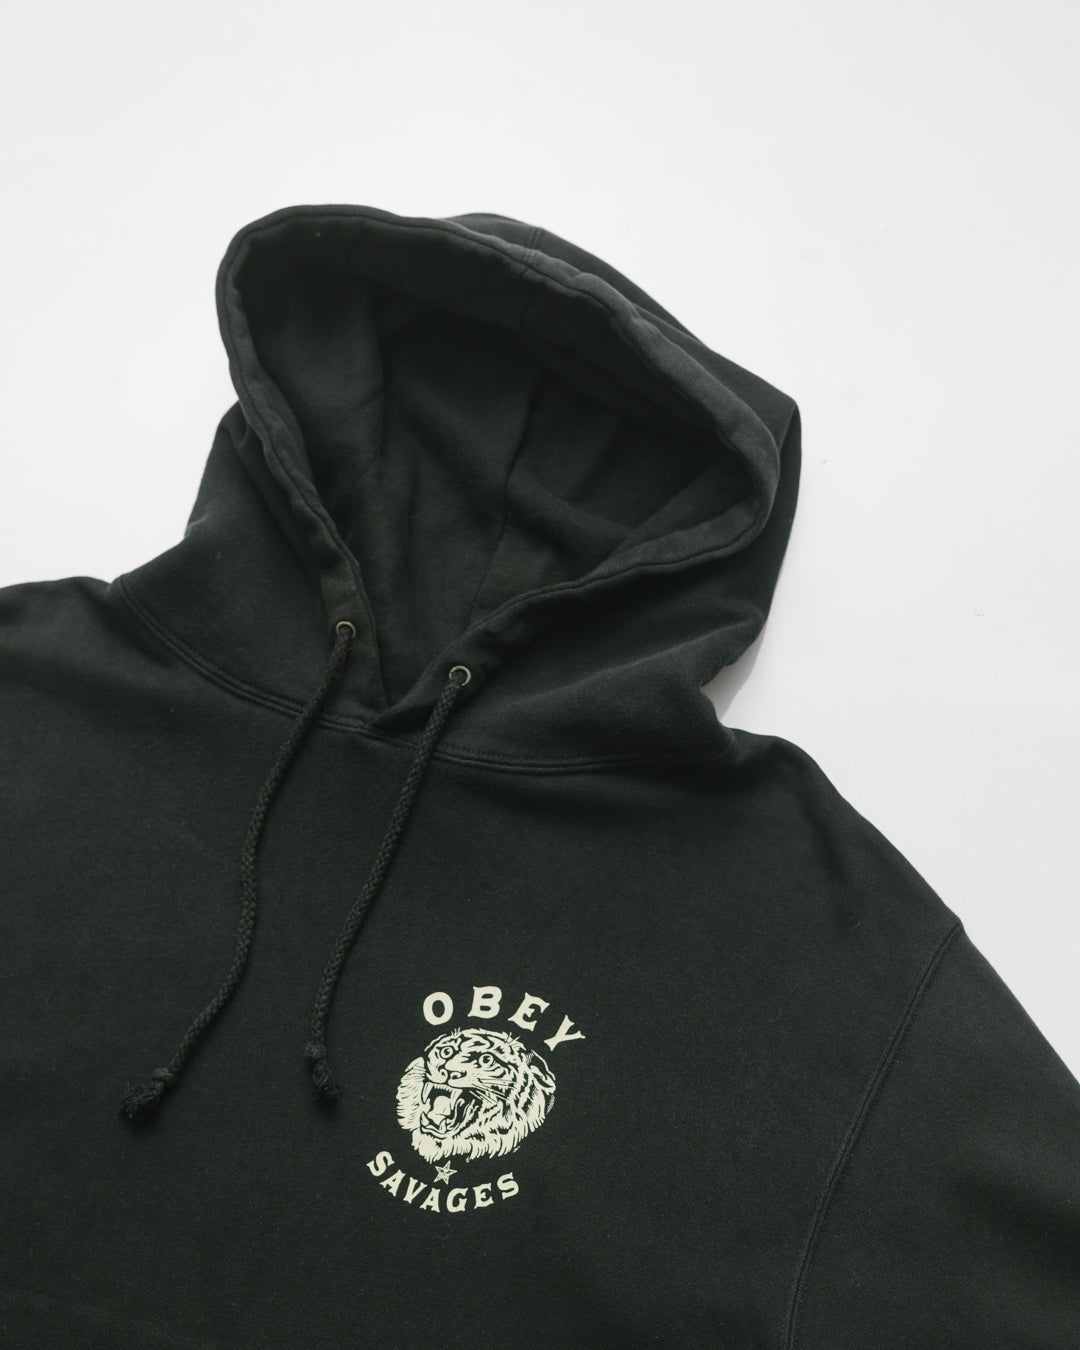 Obey savages hoodie